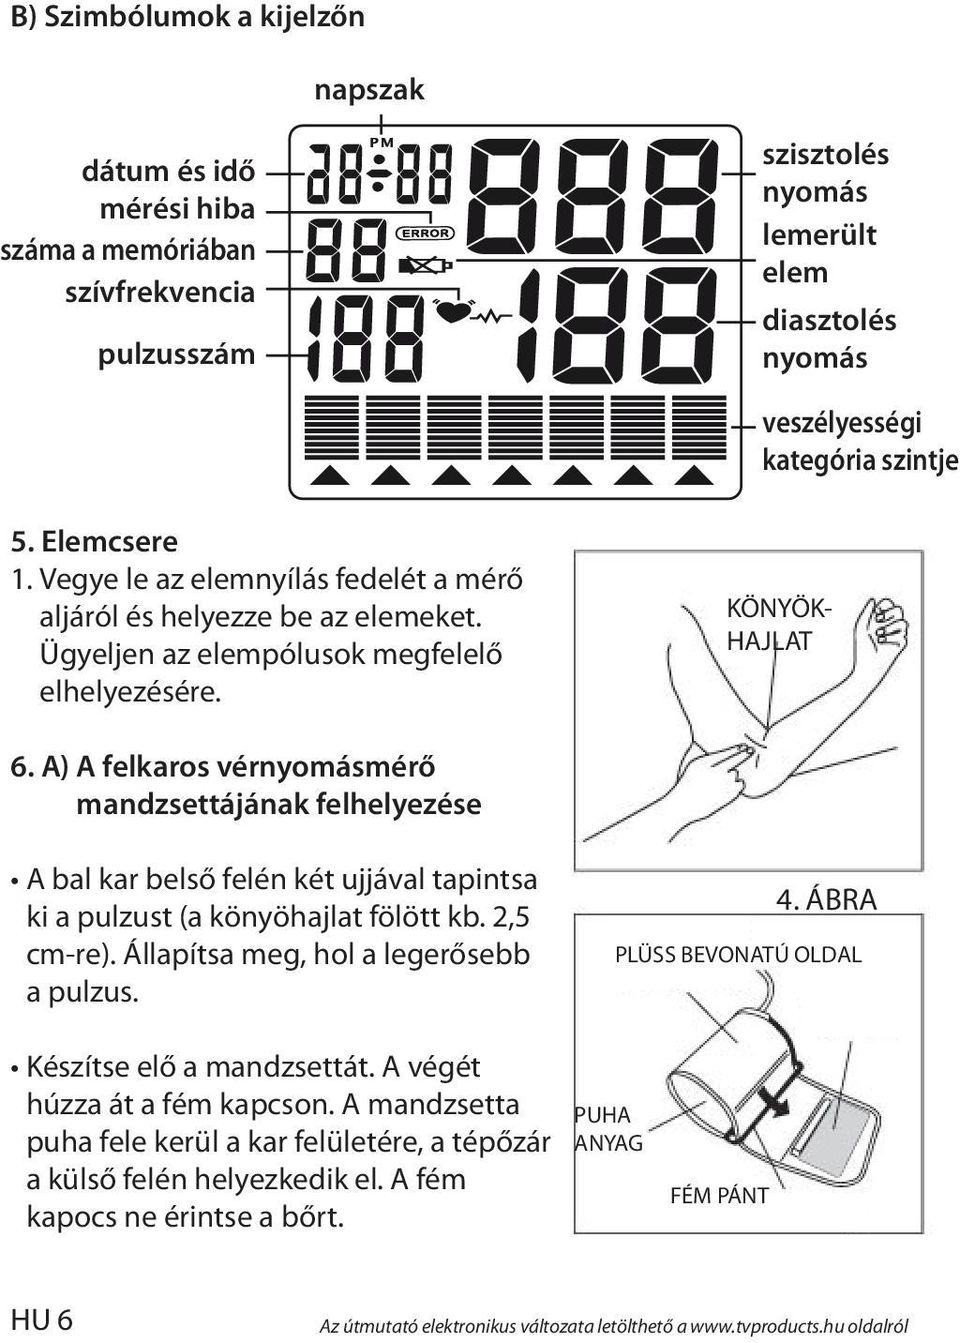 A) A felkaros vérnyomásmérő mandzsettájának felhelyezése A bal kar belső felén két ujjával tapintsa ki a pulzust (a könyöhajlat fölött kb. 2,5 cm-re). Állapítsa meg, hol a legerősebb a pulzus. 4.